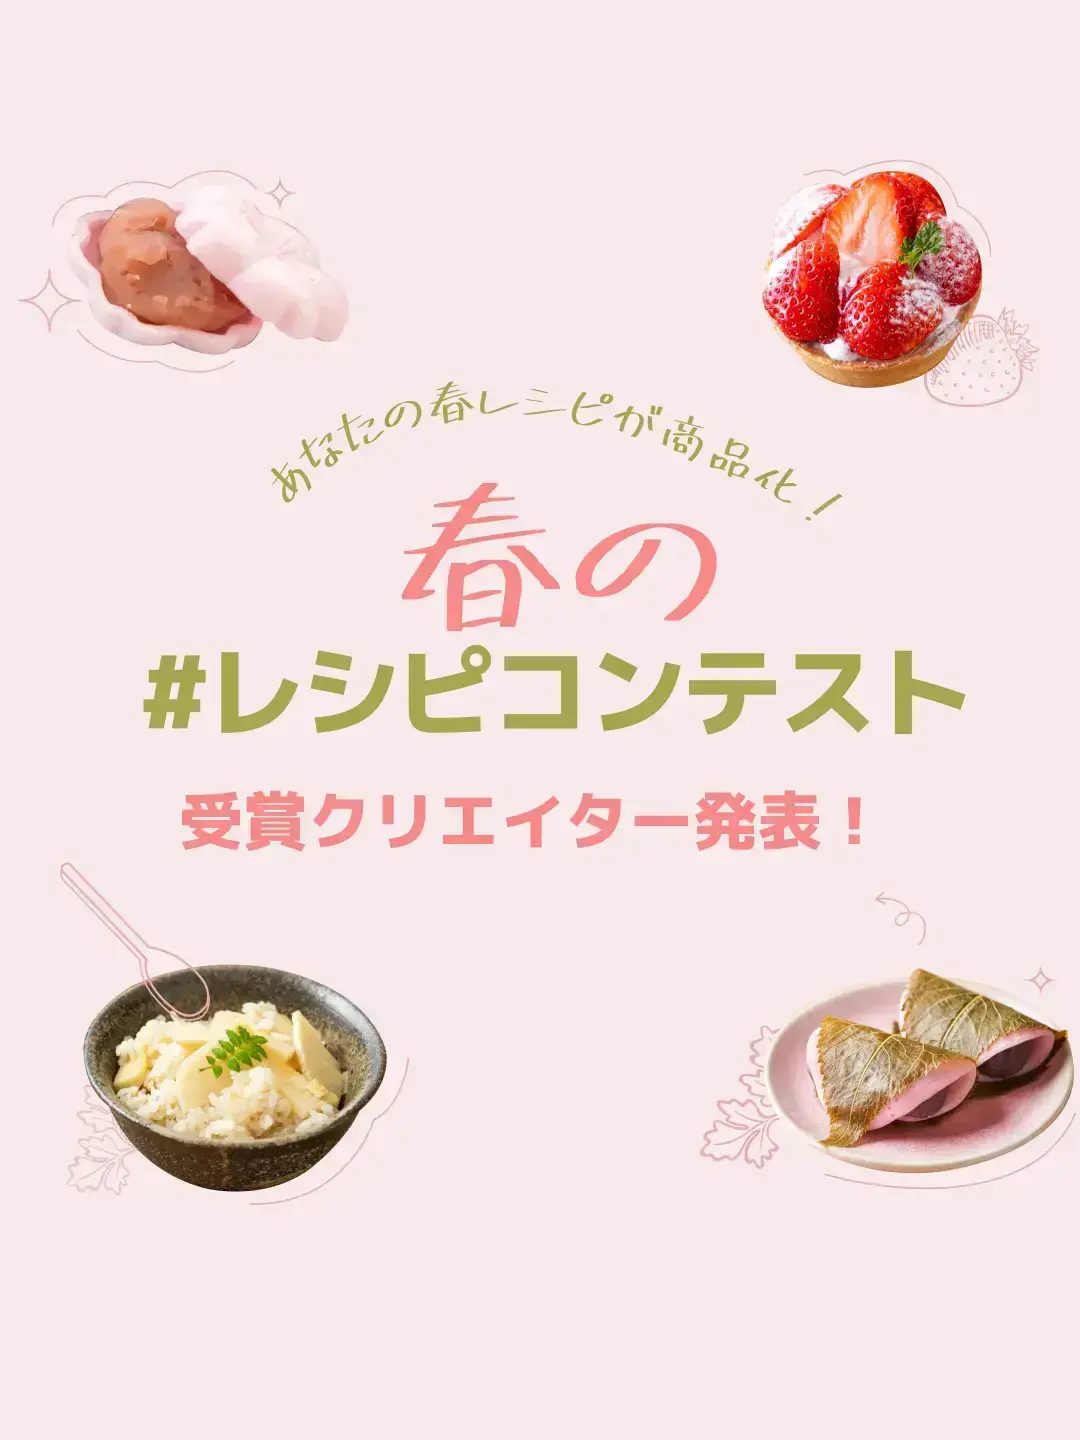 渋谷人気カフェでメニュー化 春の レシピコンテスト 受賞クリエイター発表 Lemon8公式が投稿したフォトブック Lemon8